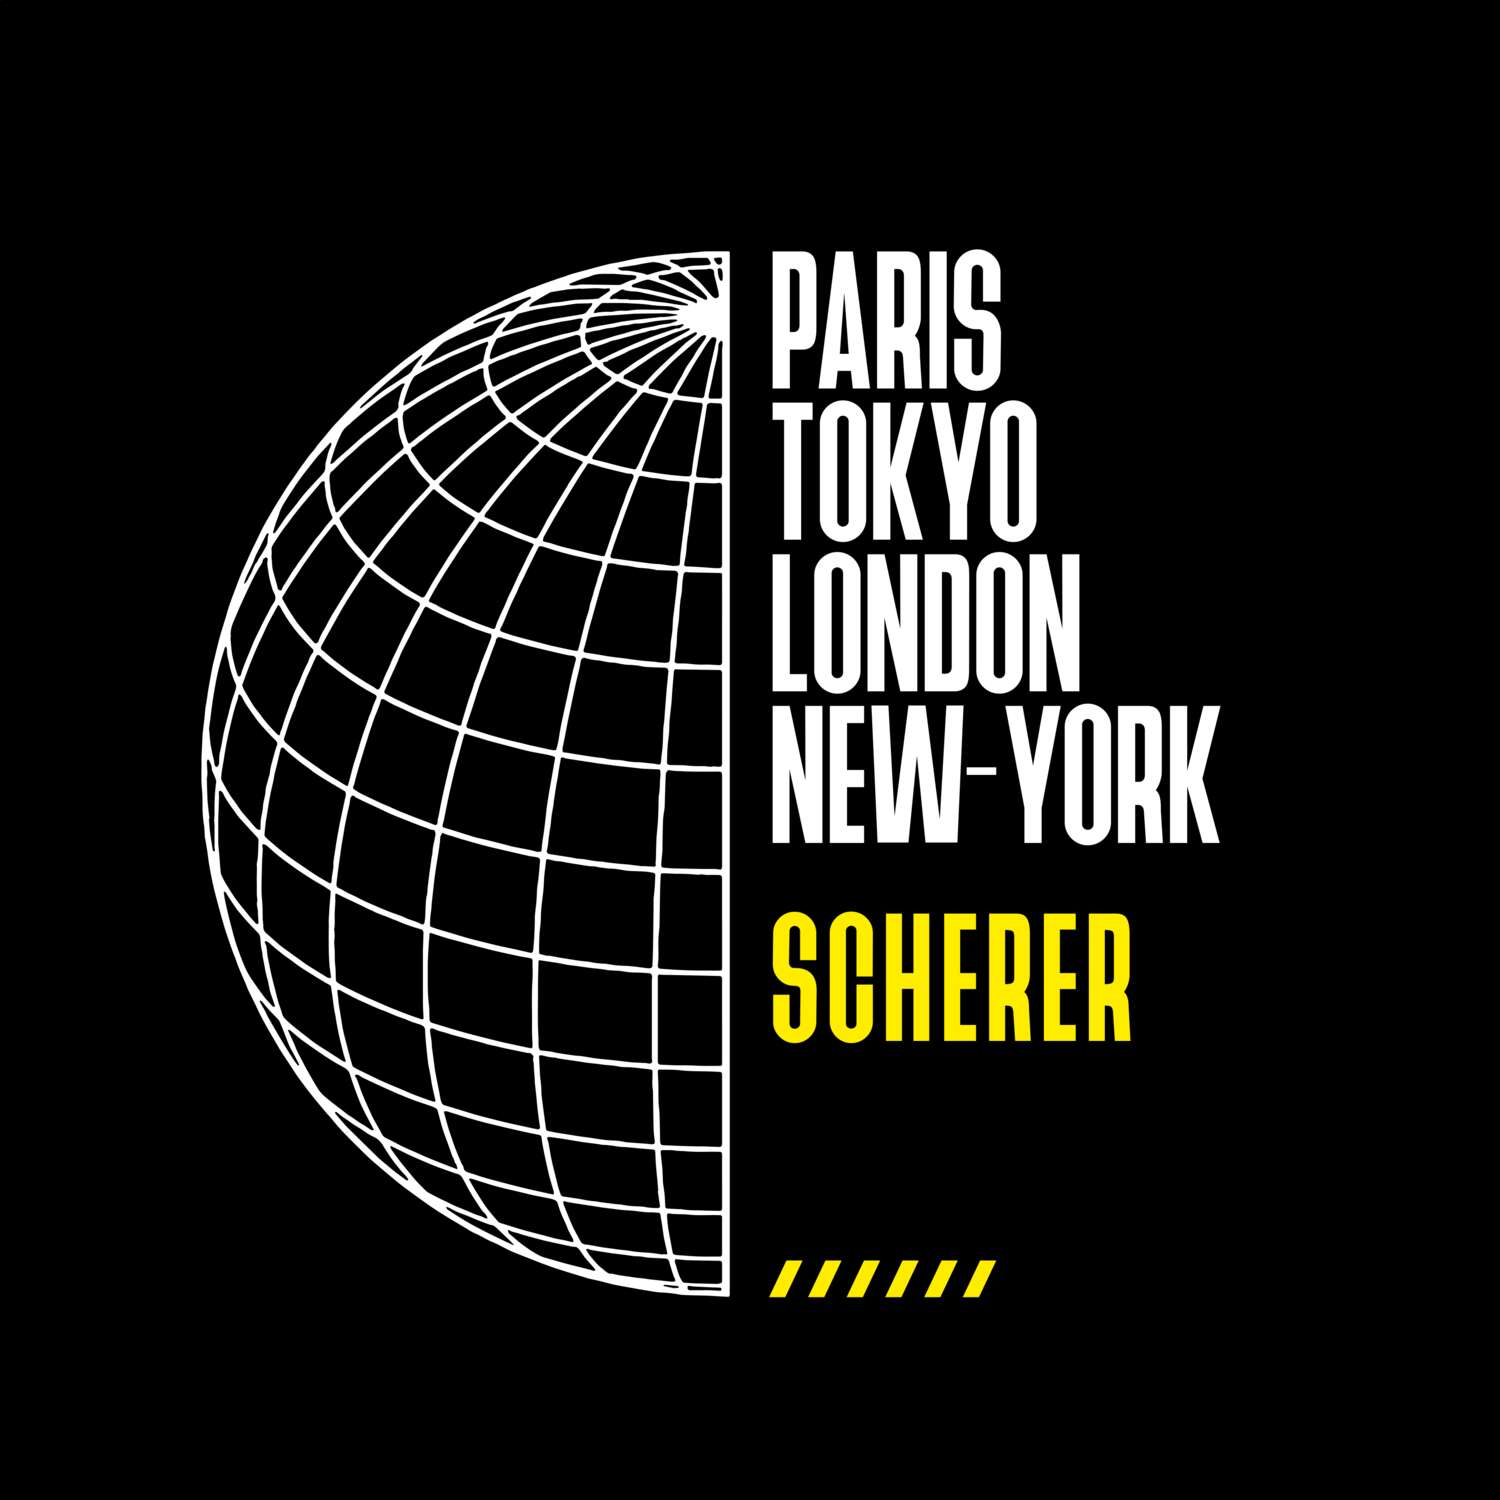 Scherer T-Shirt »Paris Tokyo London«